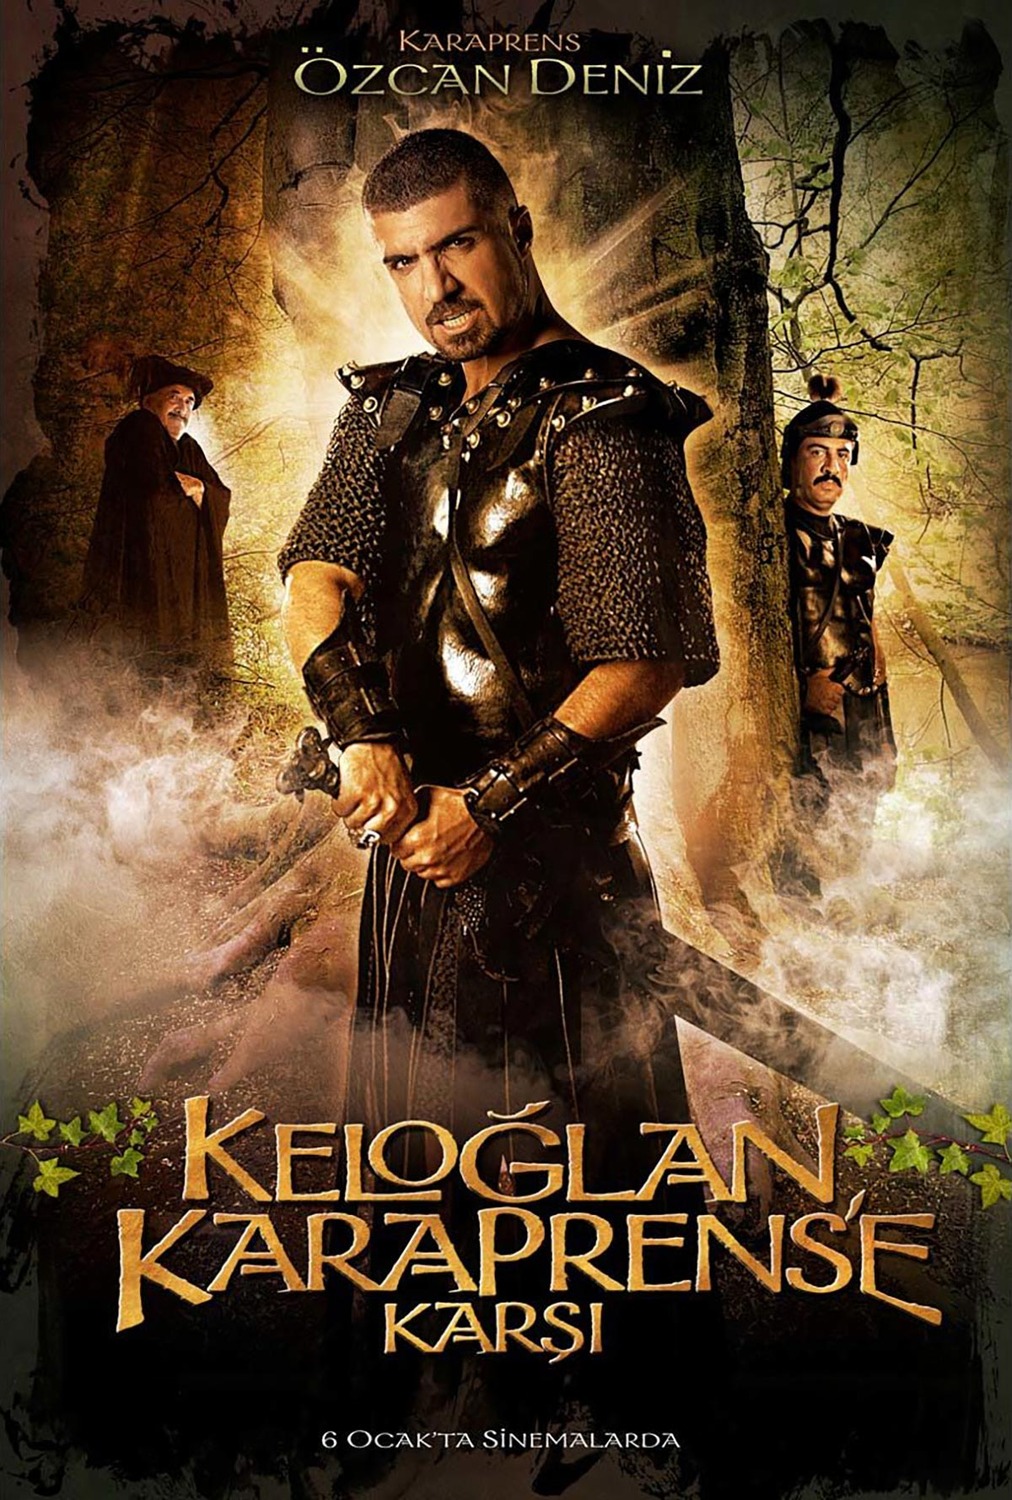 Extra Large Movie Poster Image for Keloglan Karaprens'e Karsi (#5 of 8)